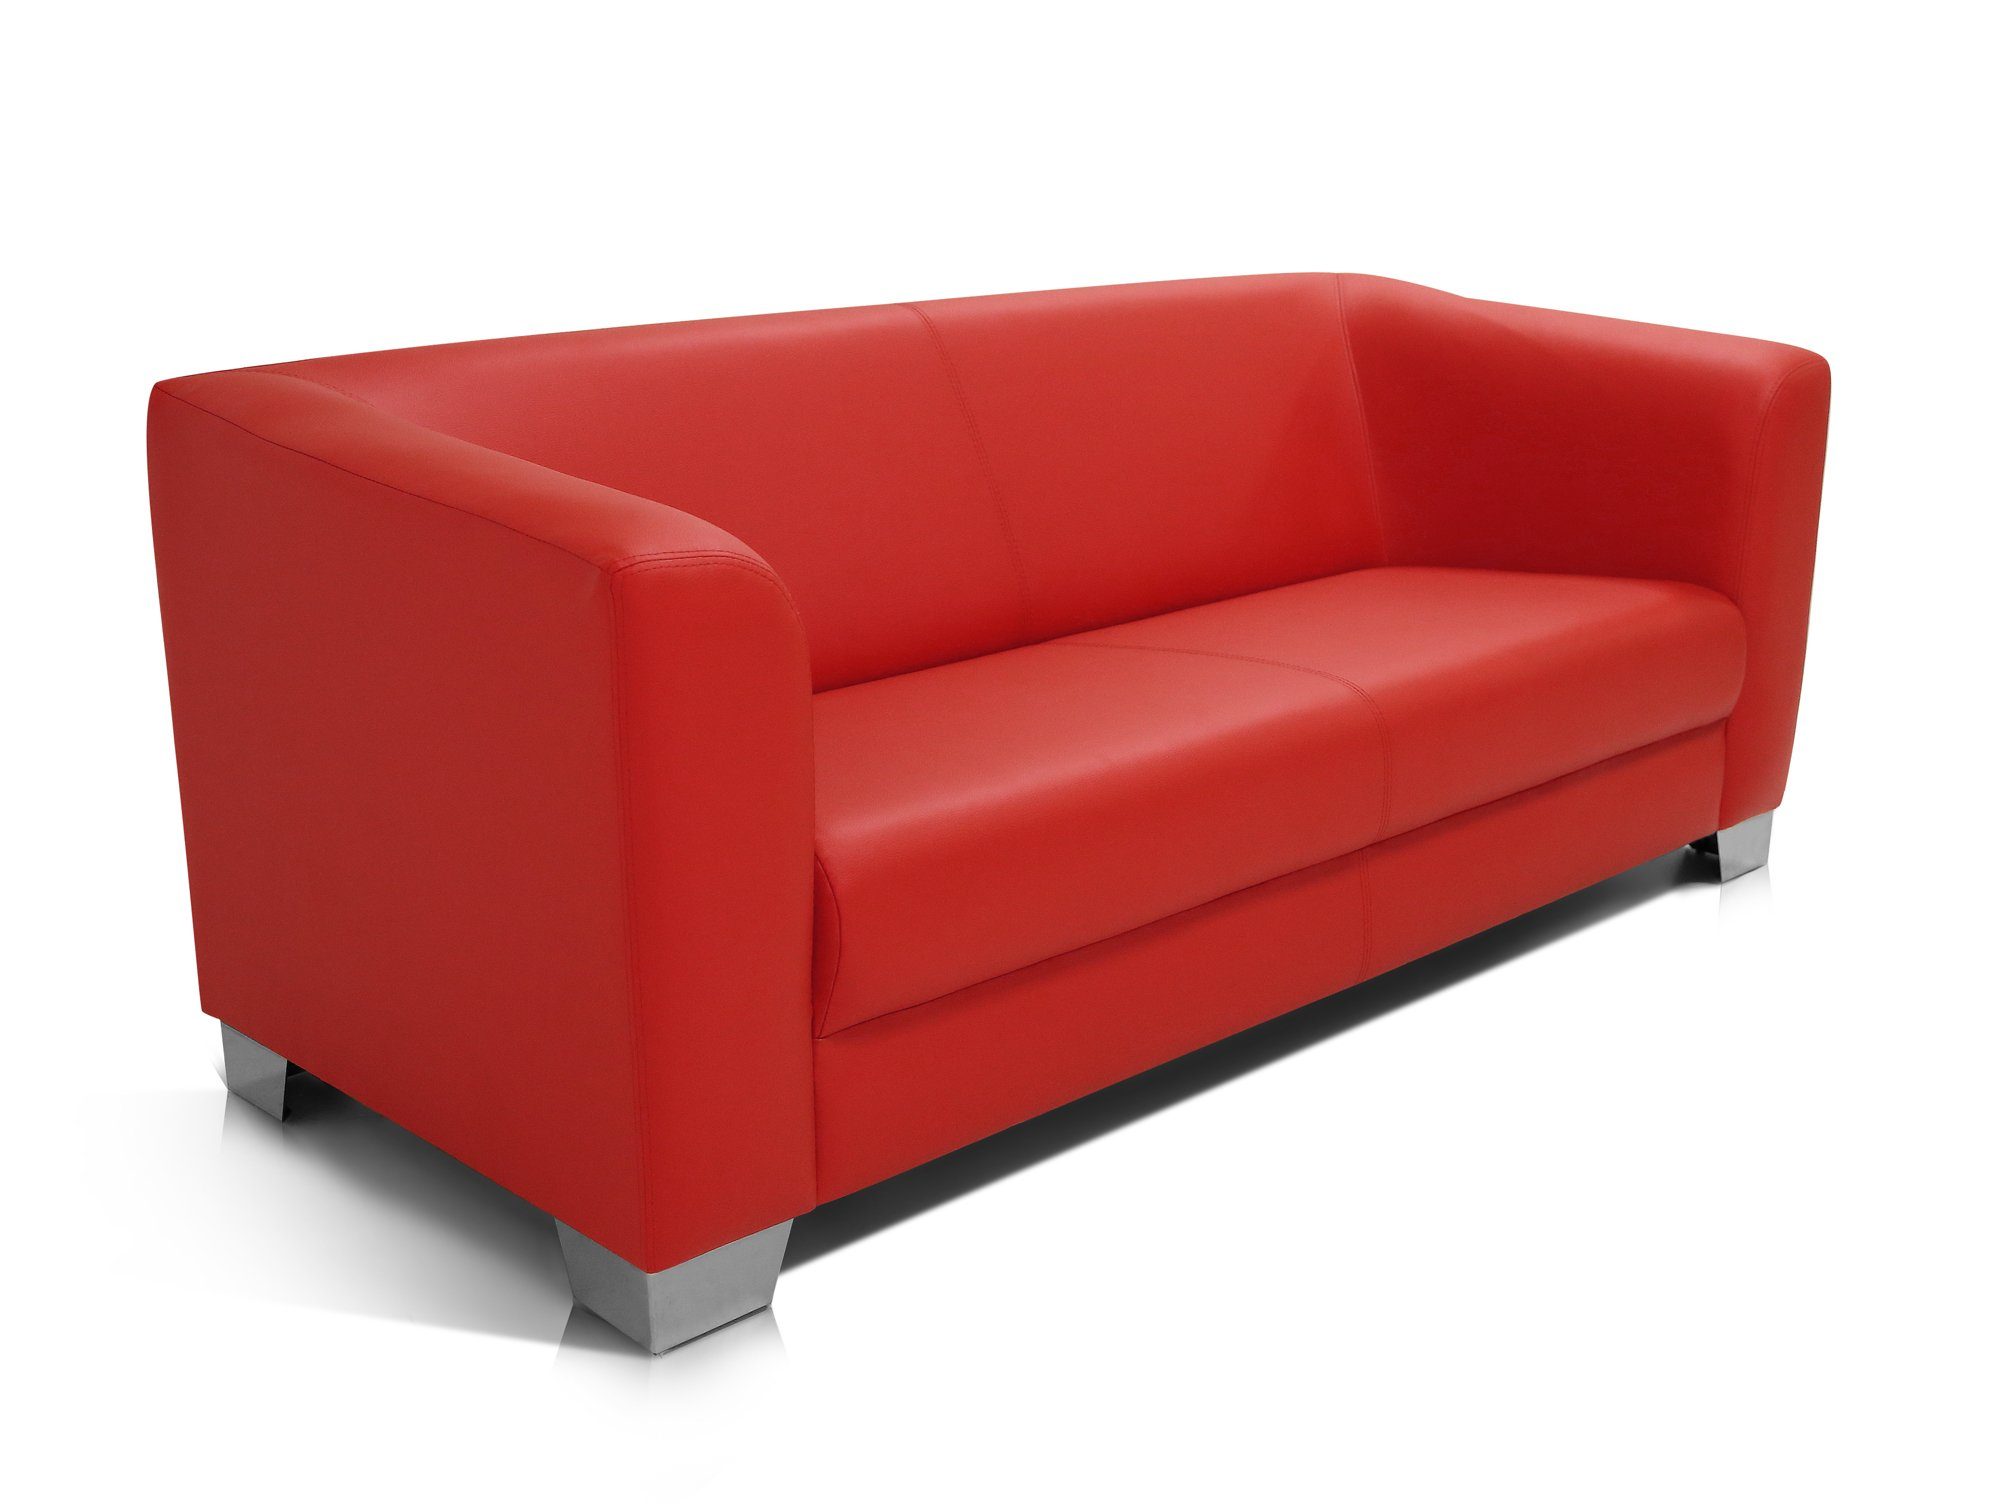 Moebel-Eins Polsterecke CHICAGO 3-Sitzer Sofa rot